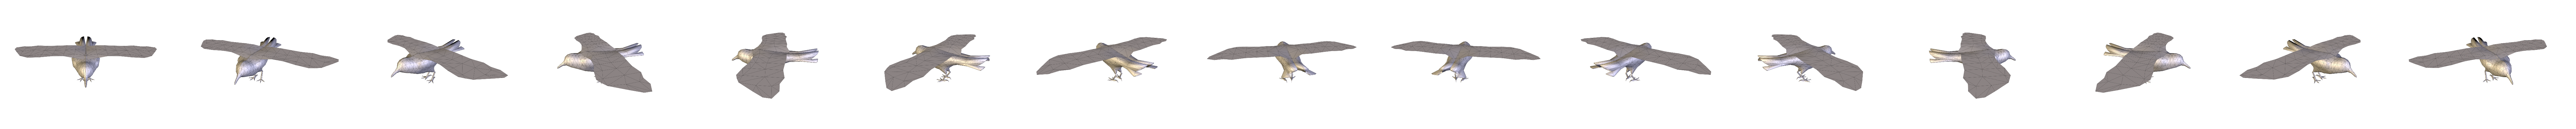 crow.obj - 3D model by cginteractivestudios [86c7c69] - Sketchfab